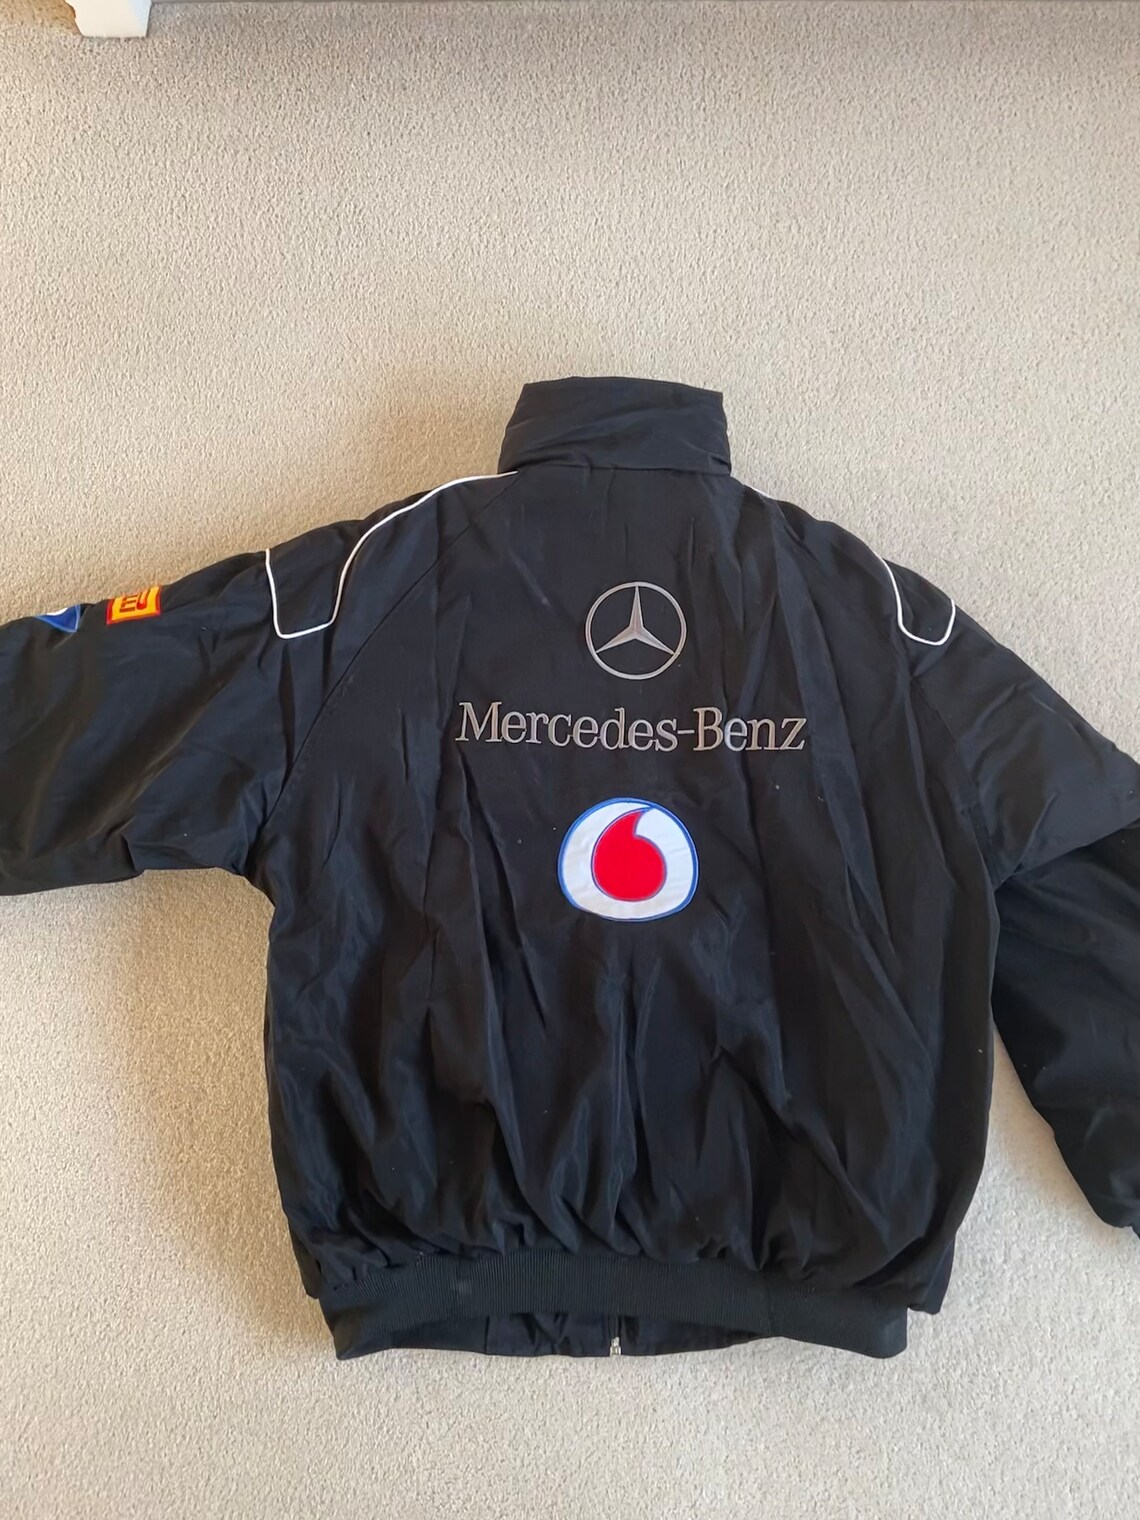 Rare Vintage Black Mercedes AMG F1 Racing/bomber Jacket Size - Etsy UK